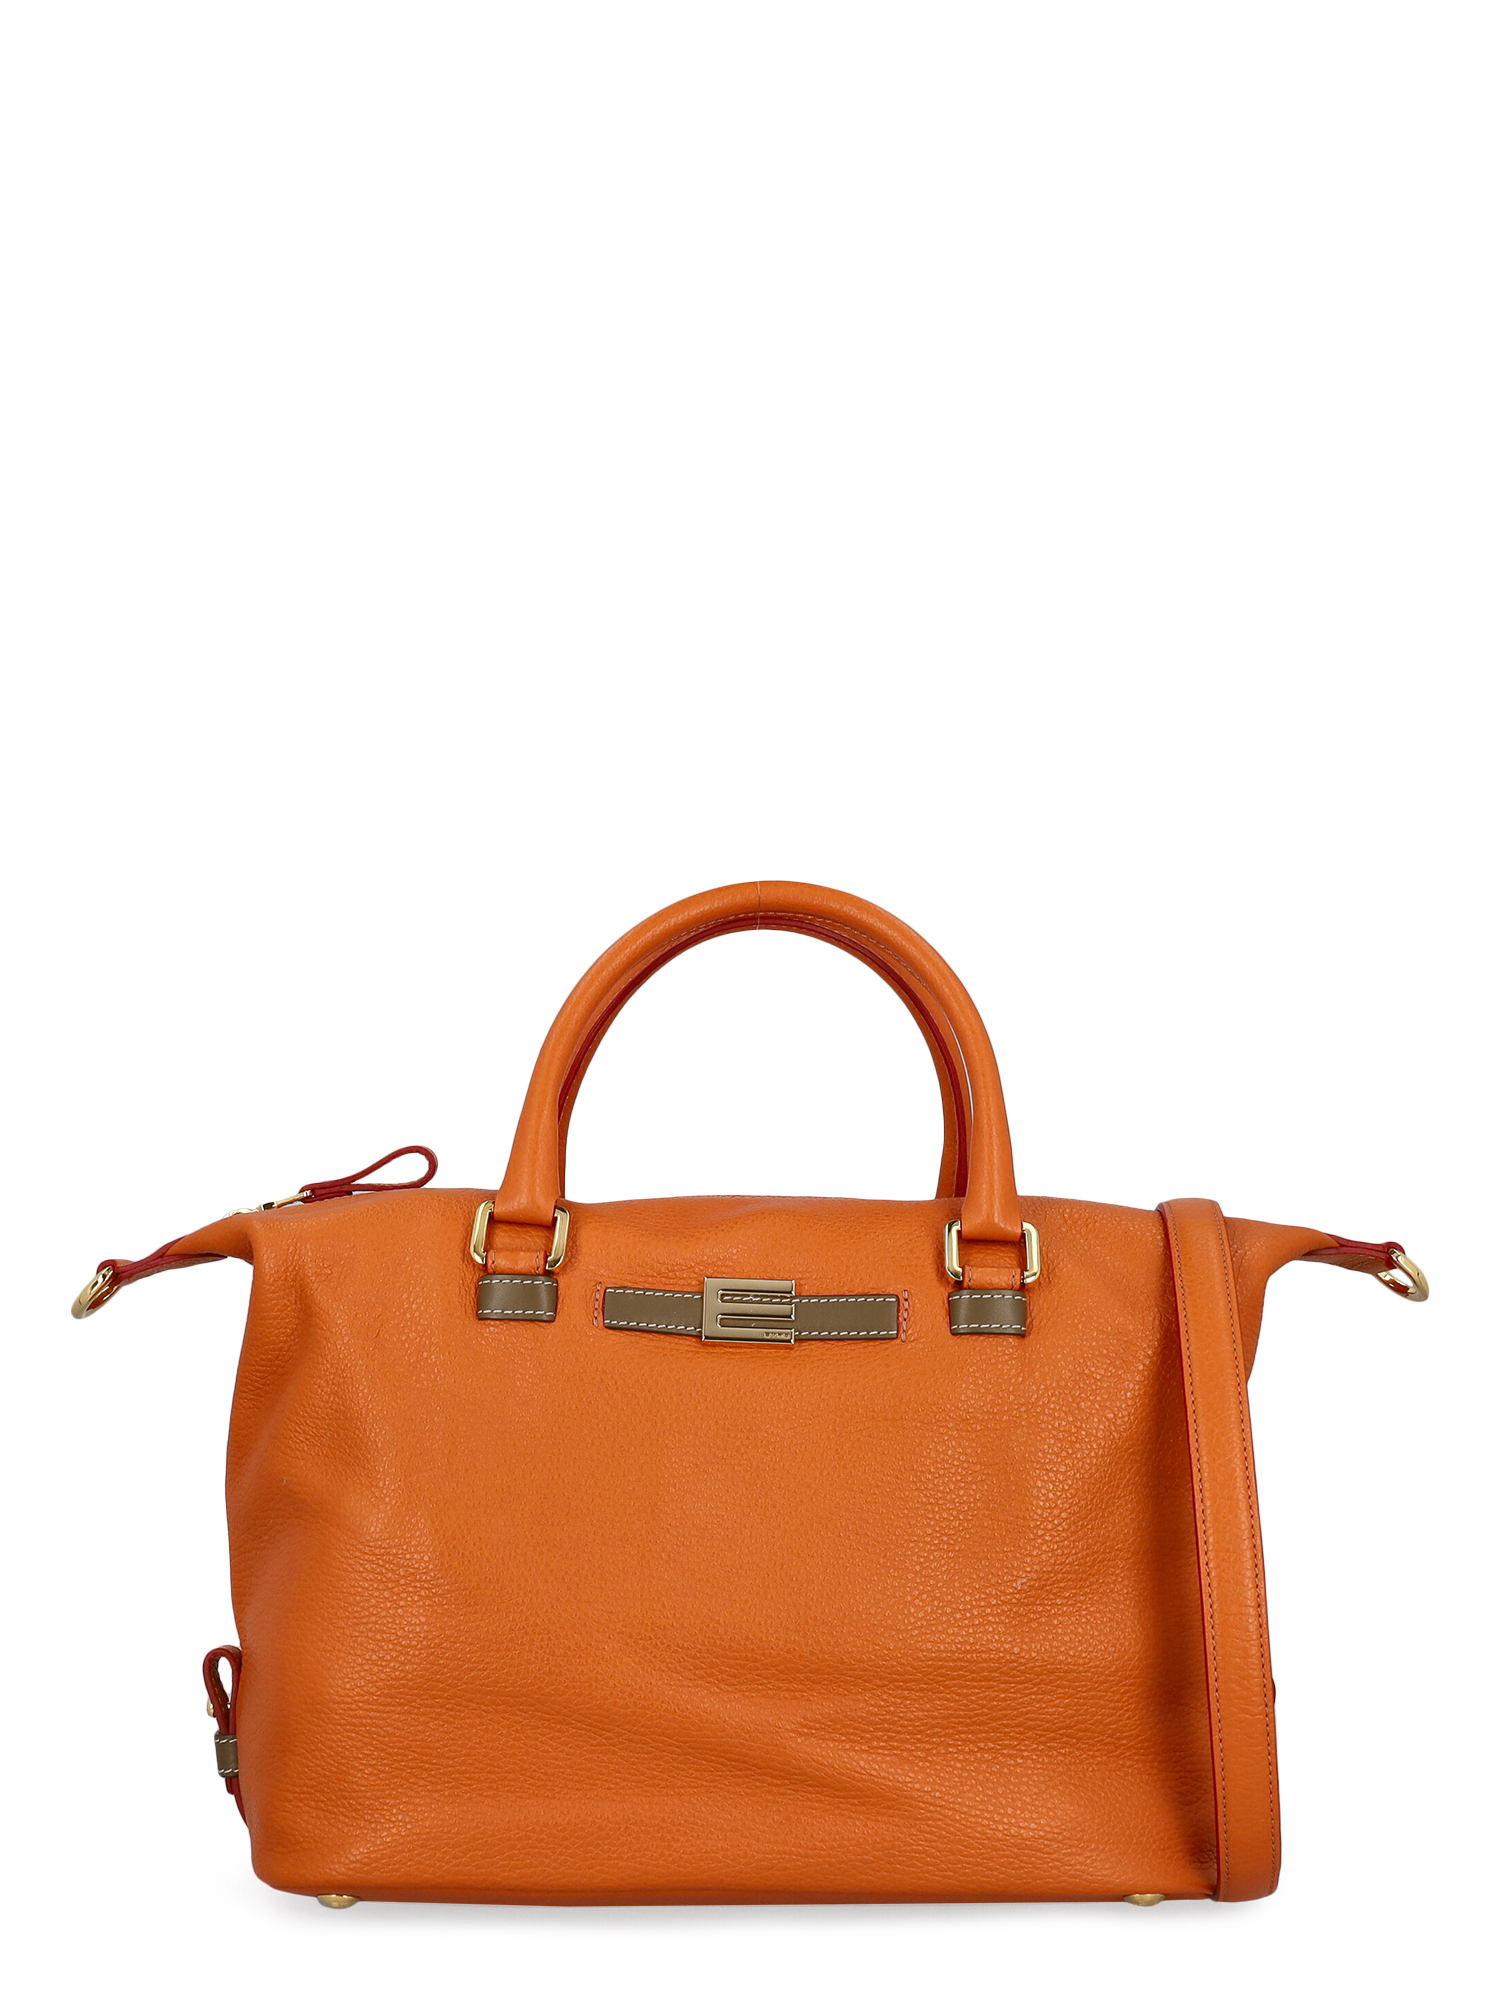 Sacs À Main Pour Femme - Etro - En Leather Orange - Taille:  -